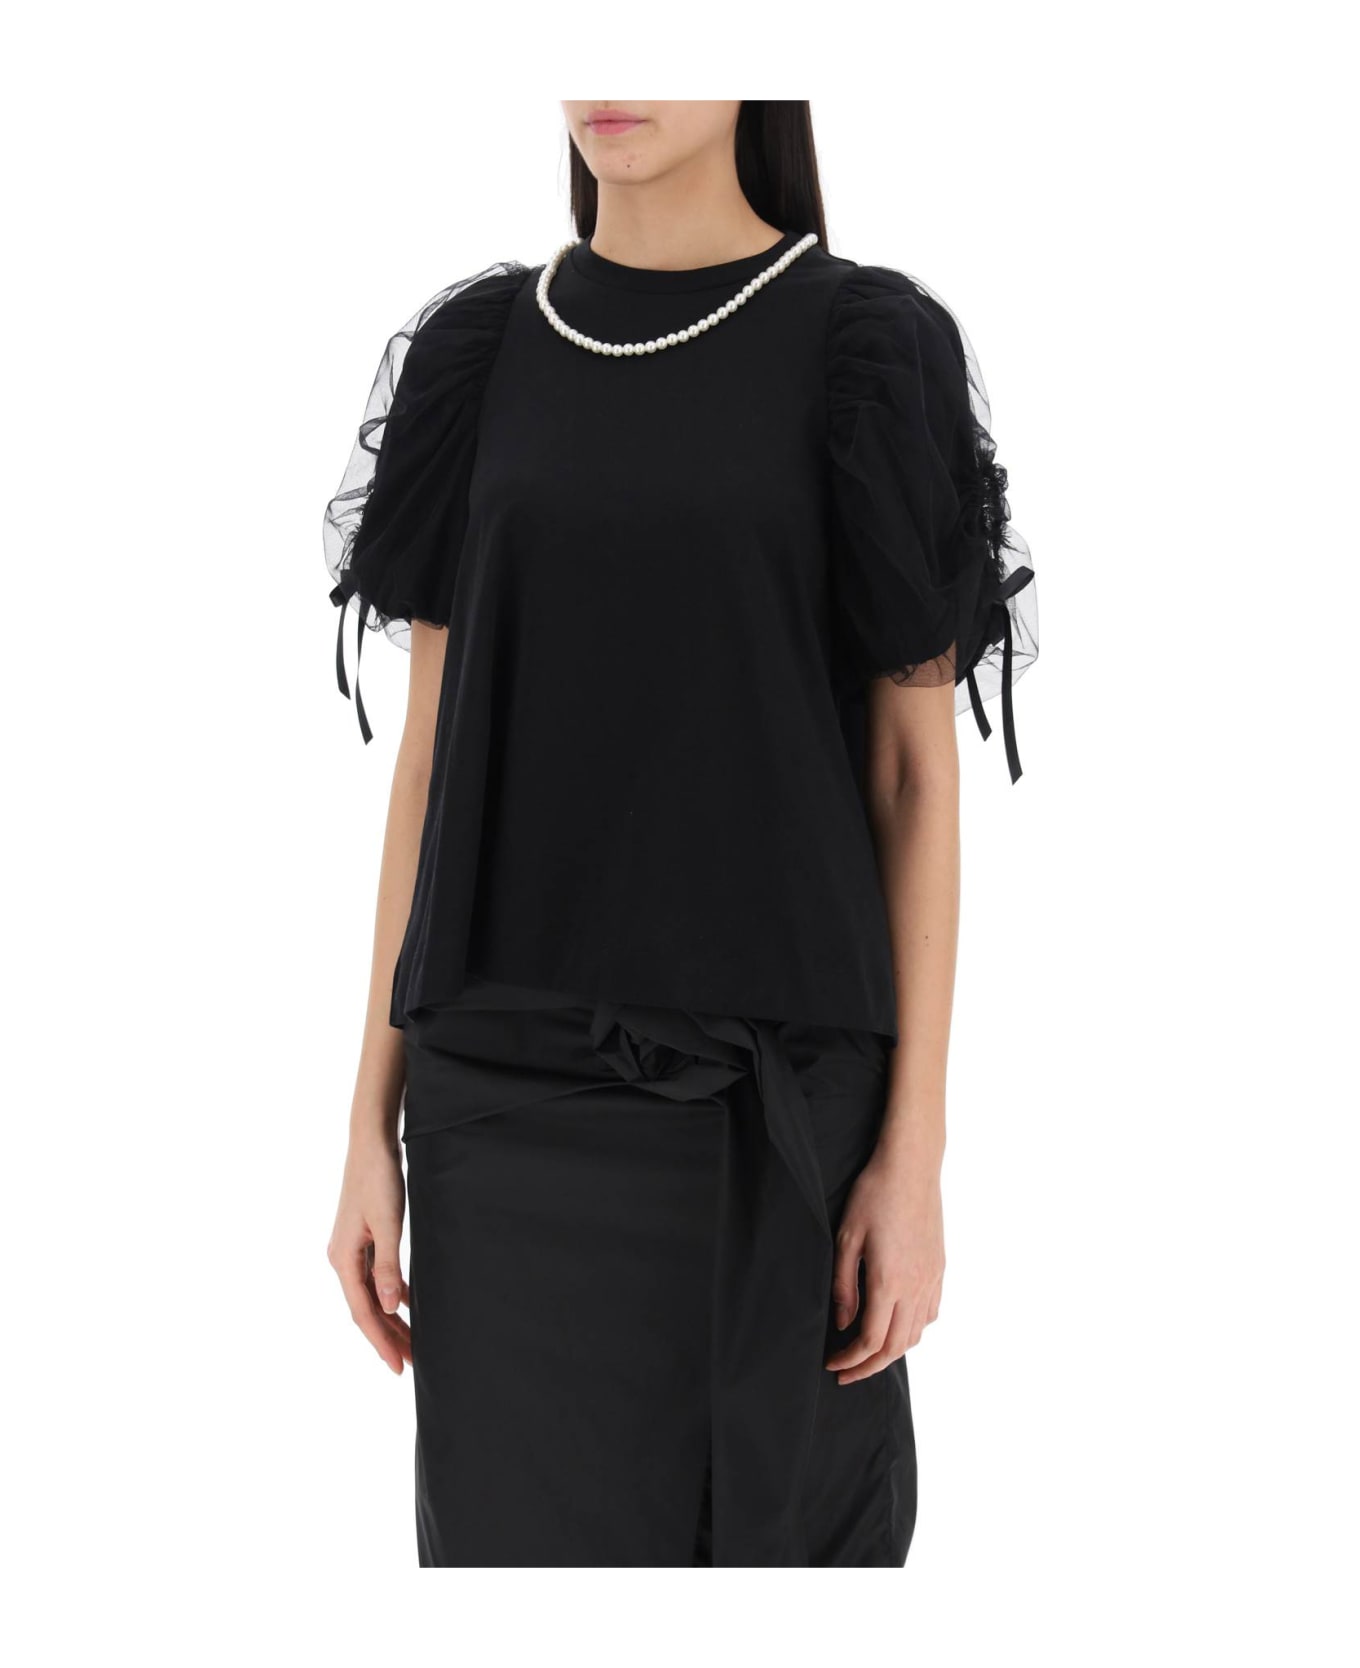 Simone Rocha Puff Sleeves T-shirt - BLACK PEARL (Black)